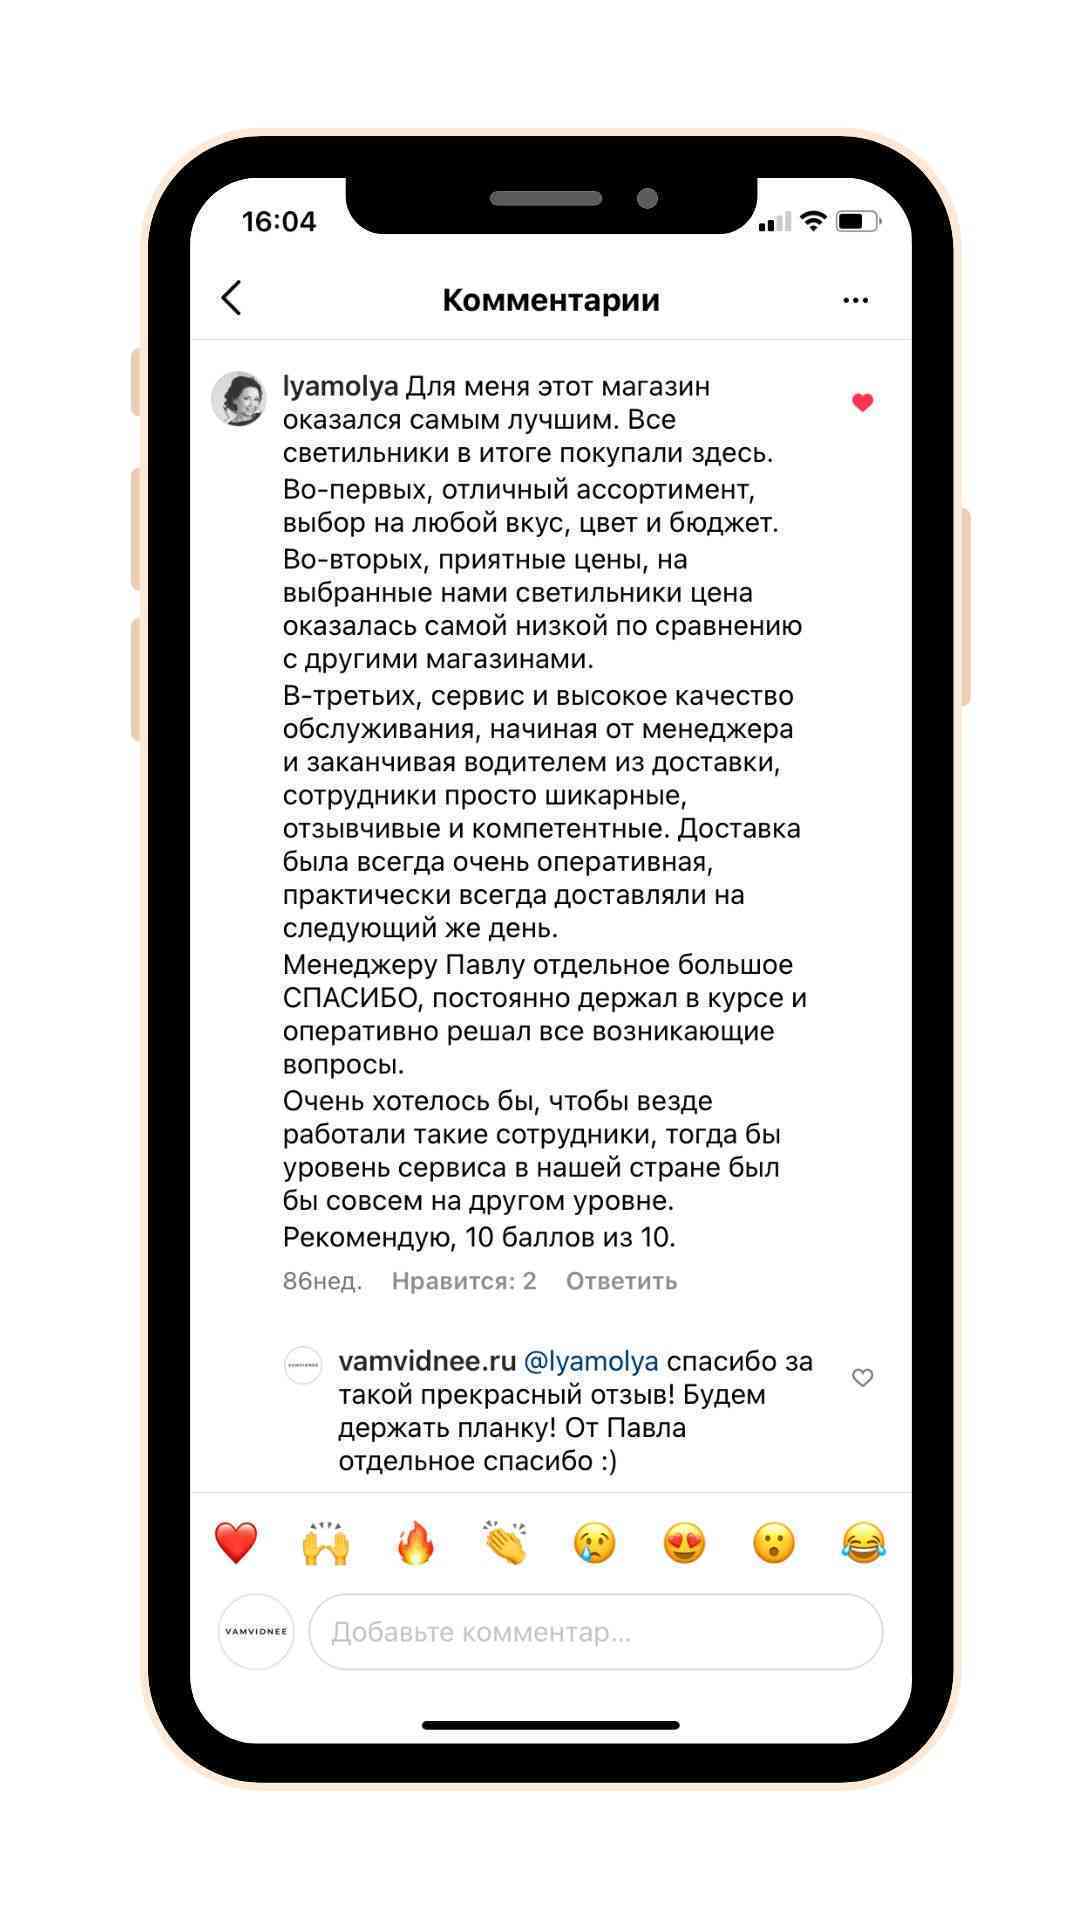 отзыв о ВамВиднее.ру, отзыв об онлайнопт